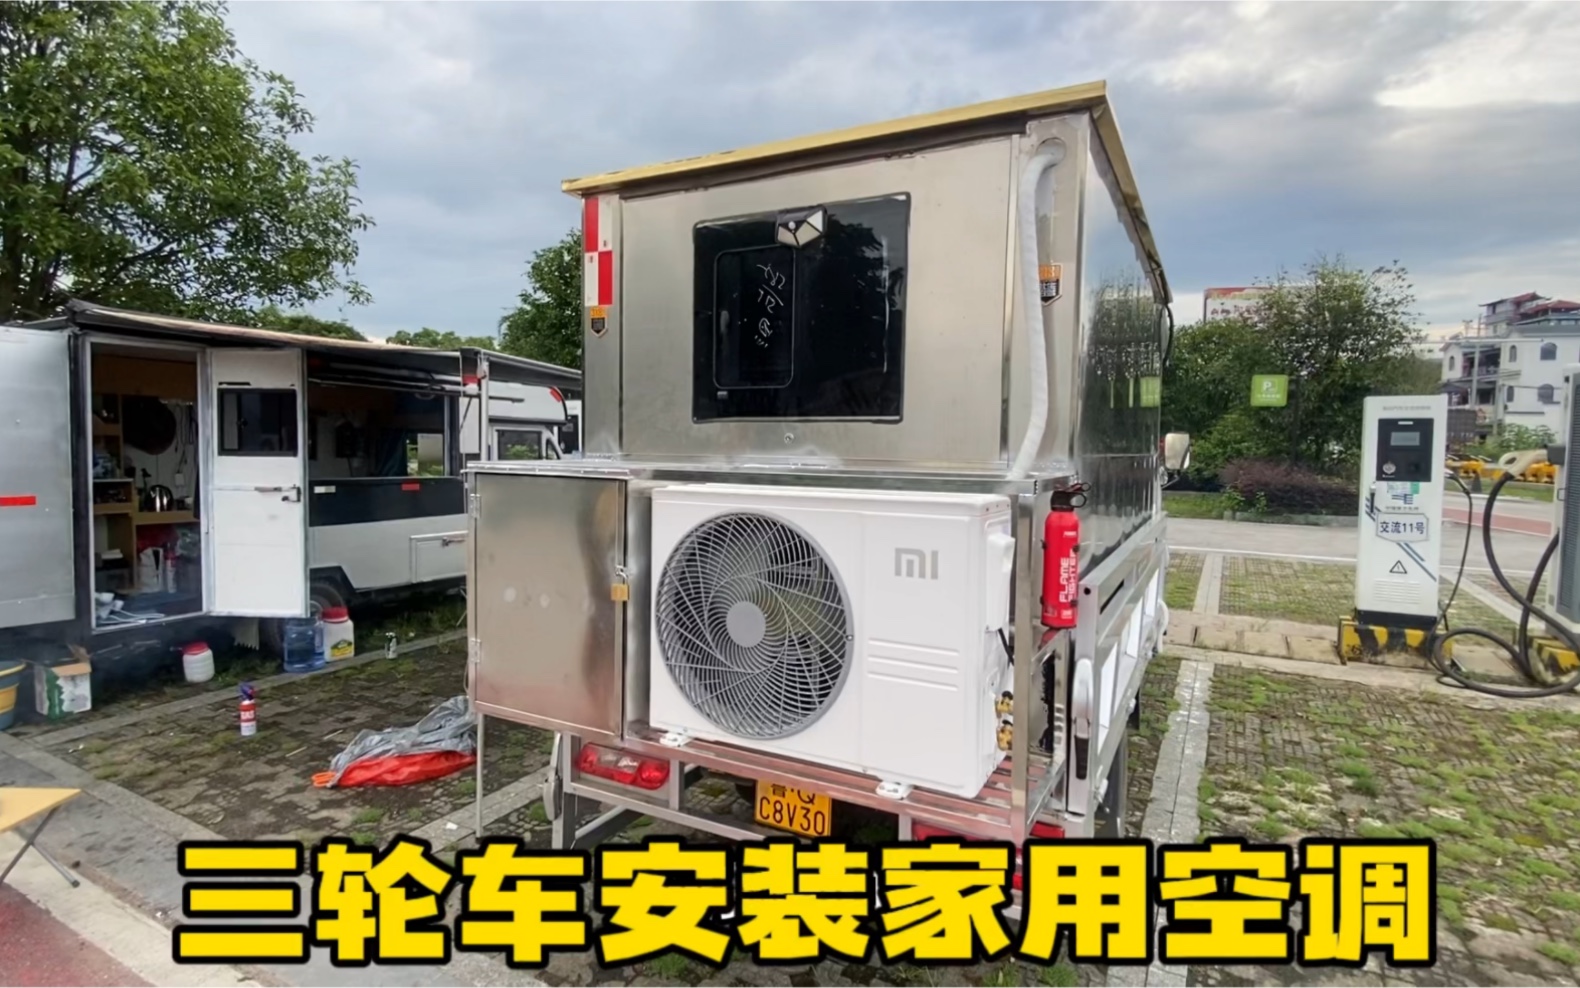 小三轮房车安装家用变频空调 车里自带43度电 今年夏天不担心热了